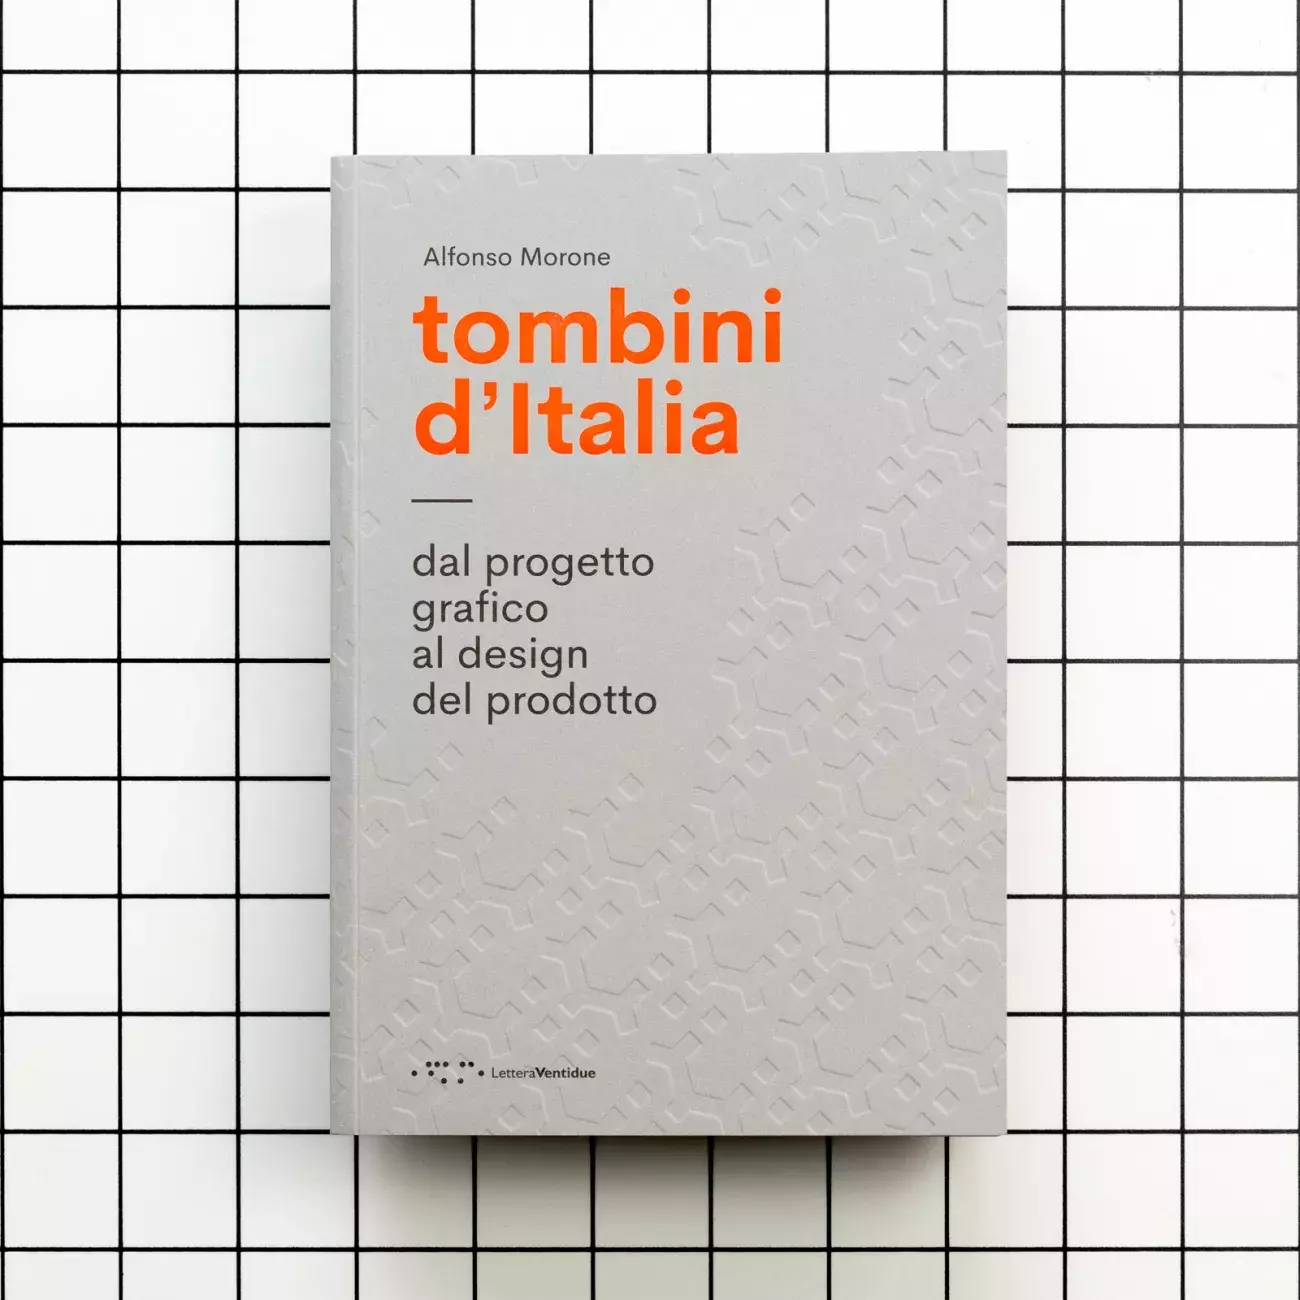 Tombini d'Italia design studies on manhole cover 